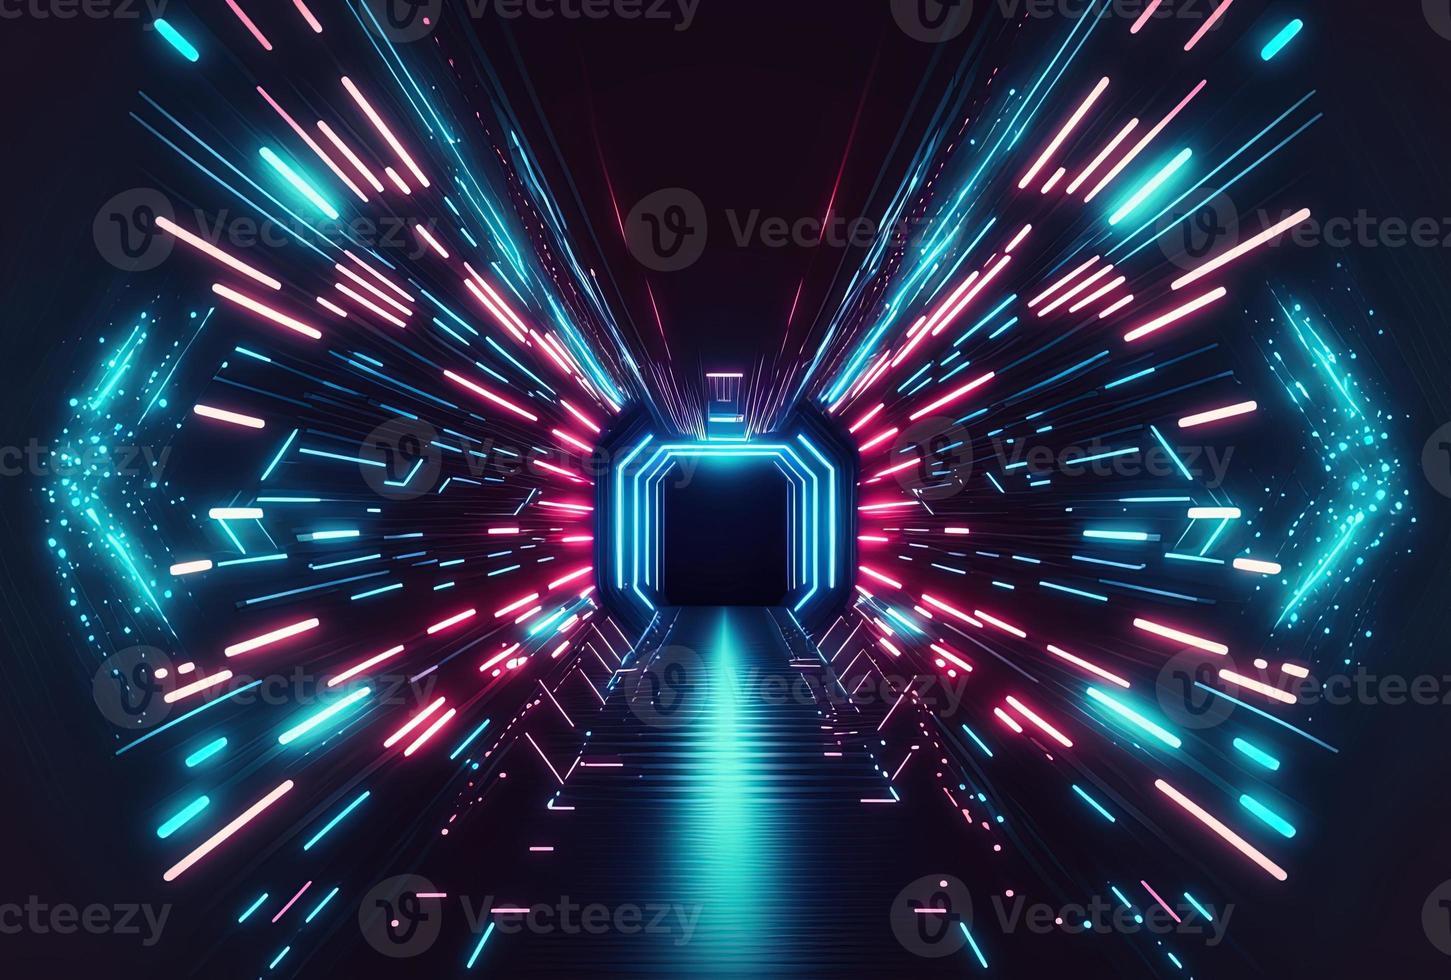 fundo de túnel futurista com brilho de aceleração de neon foto